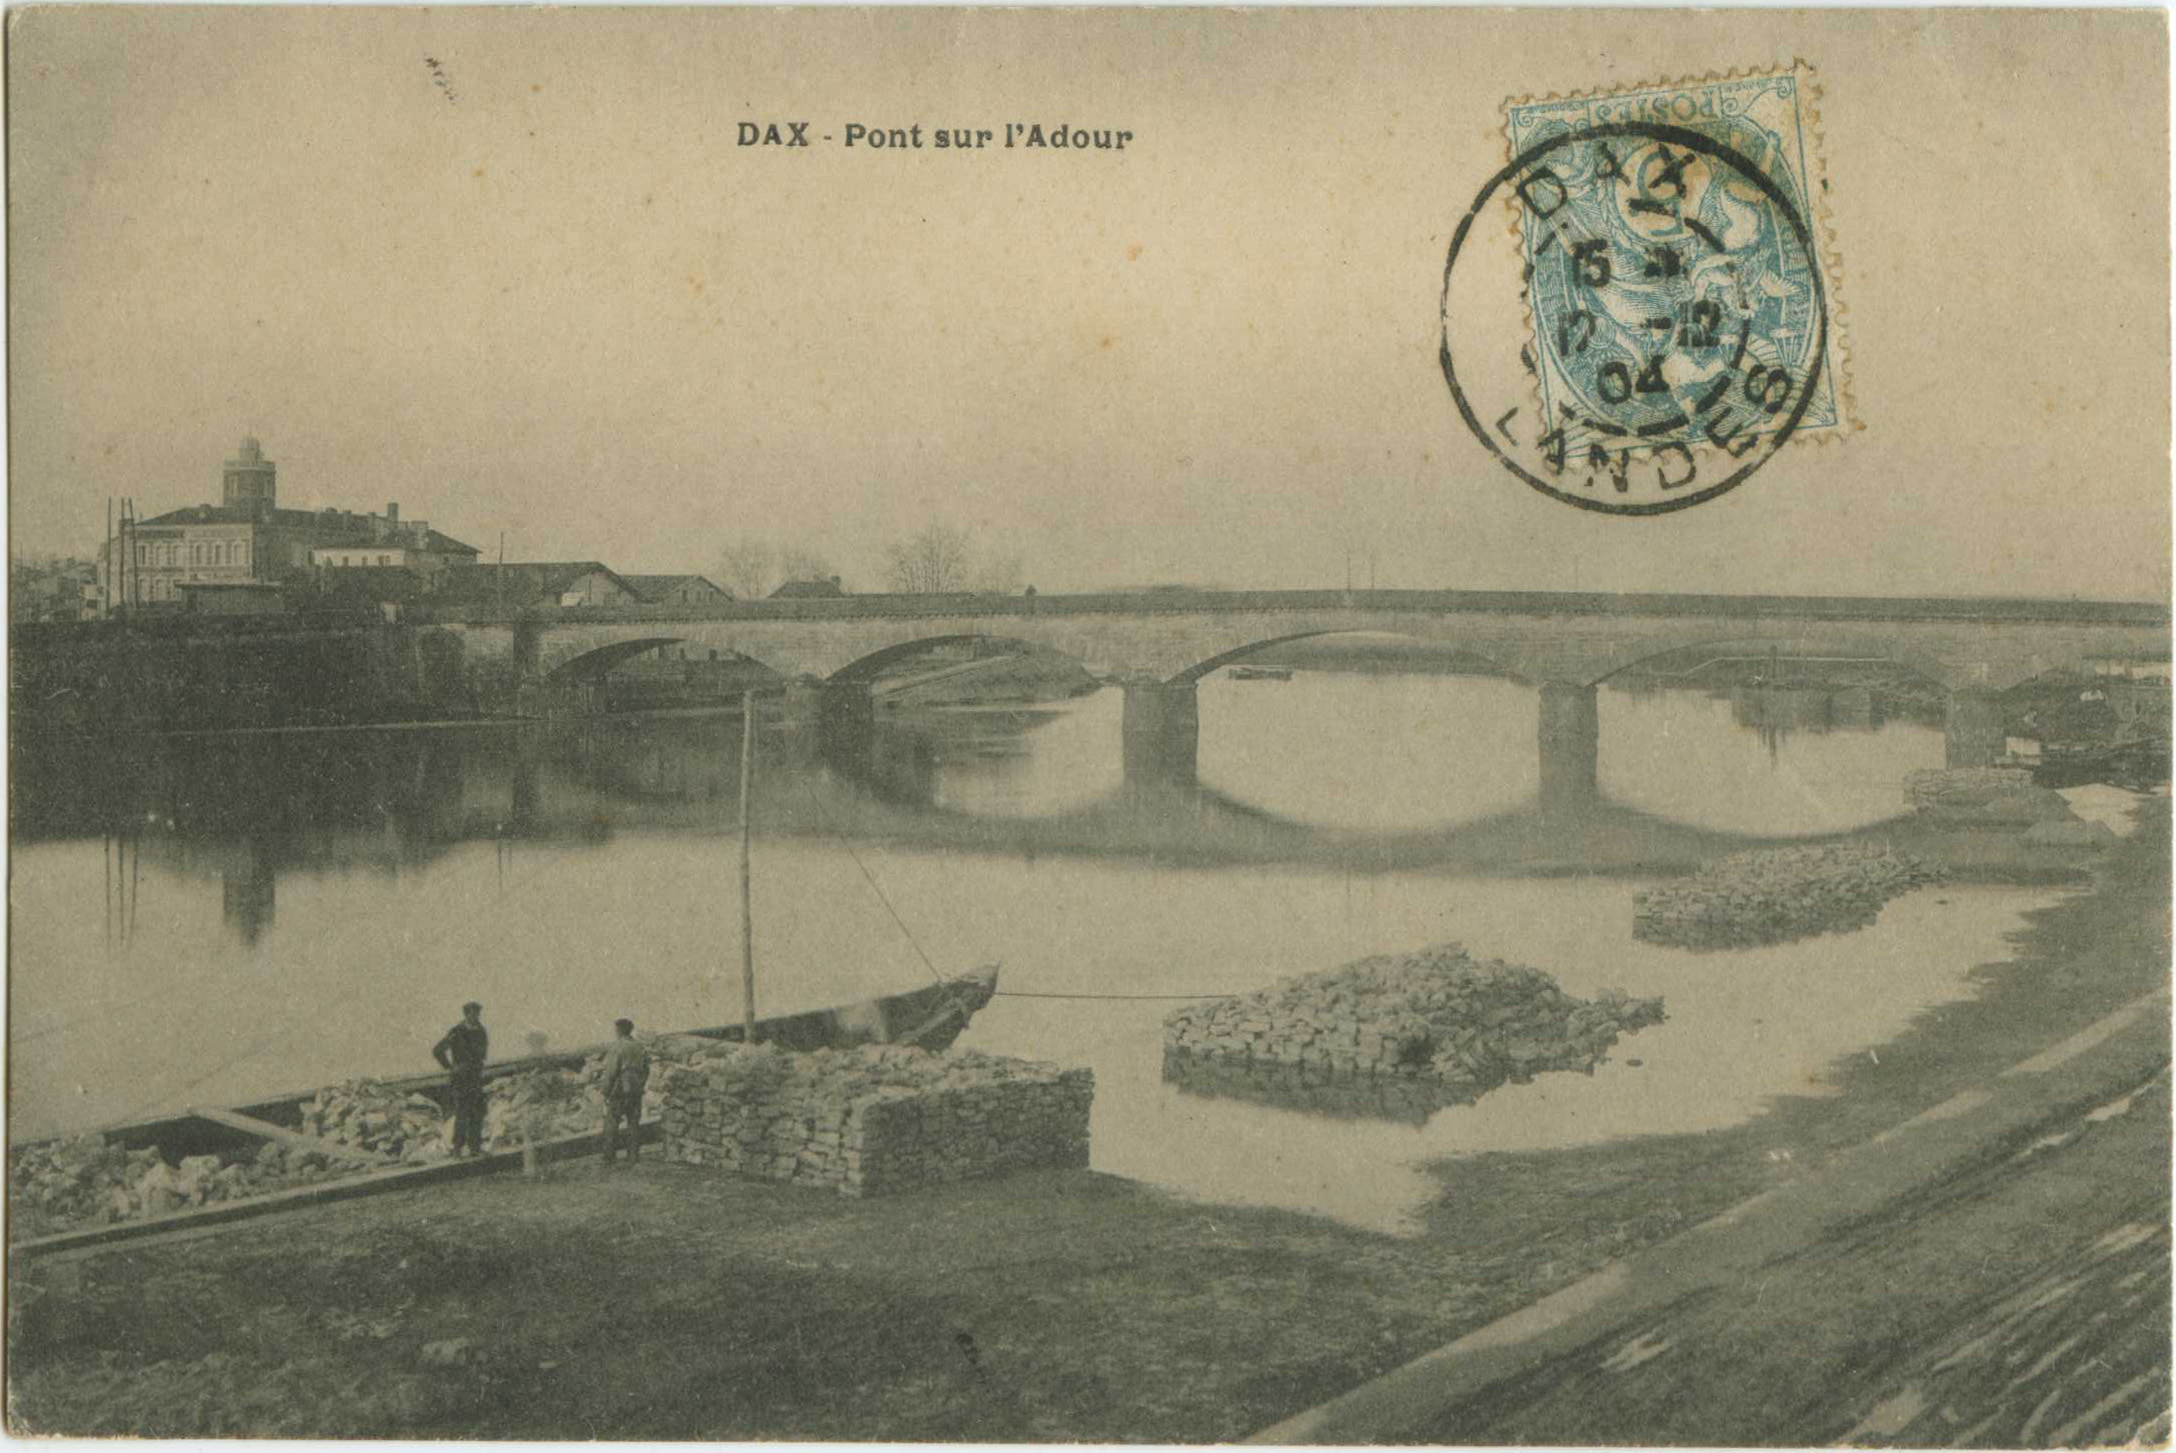 Dax - Pont sur l'Adour